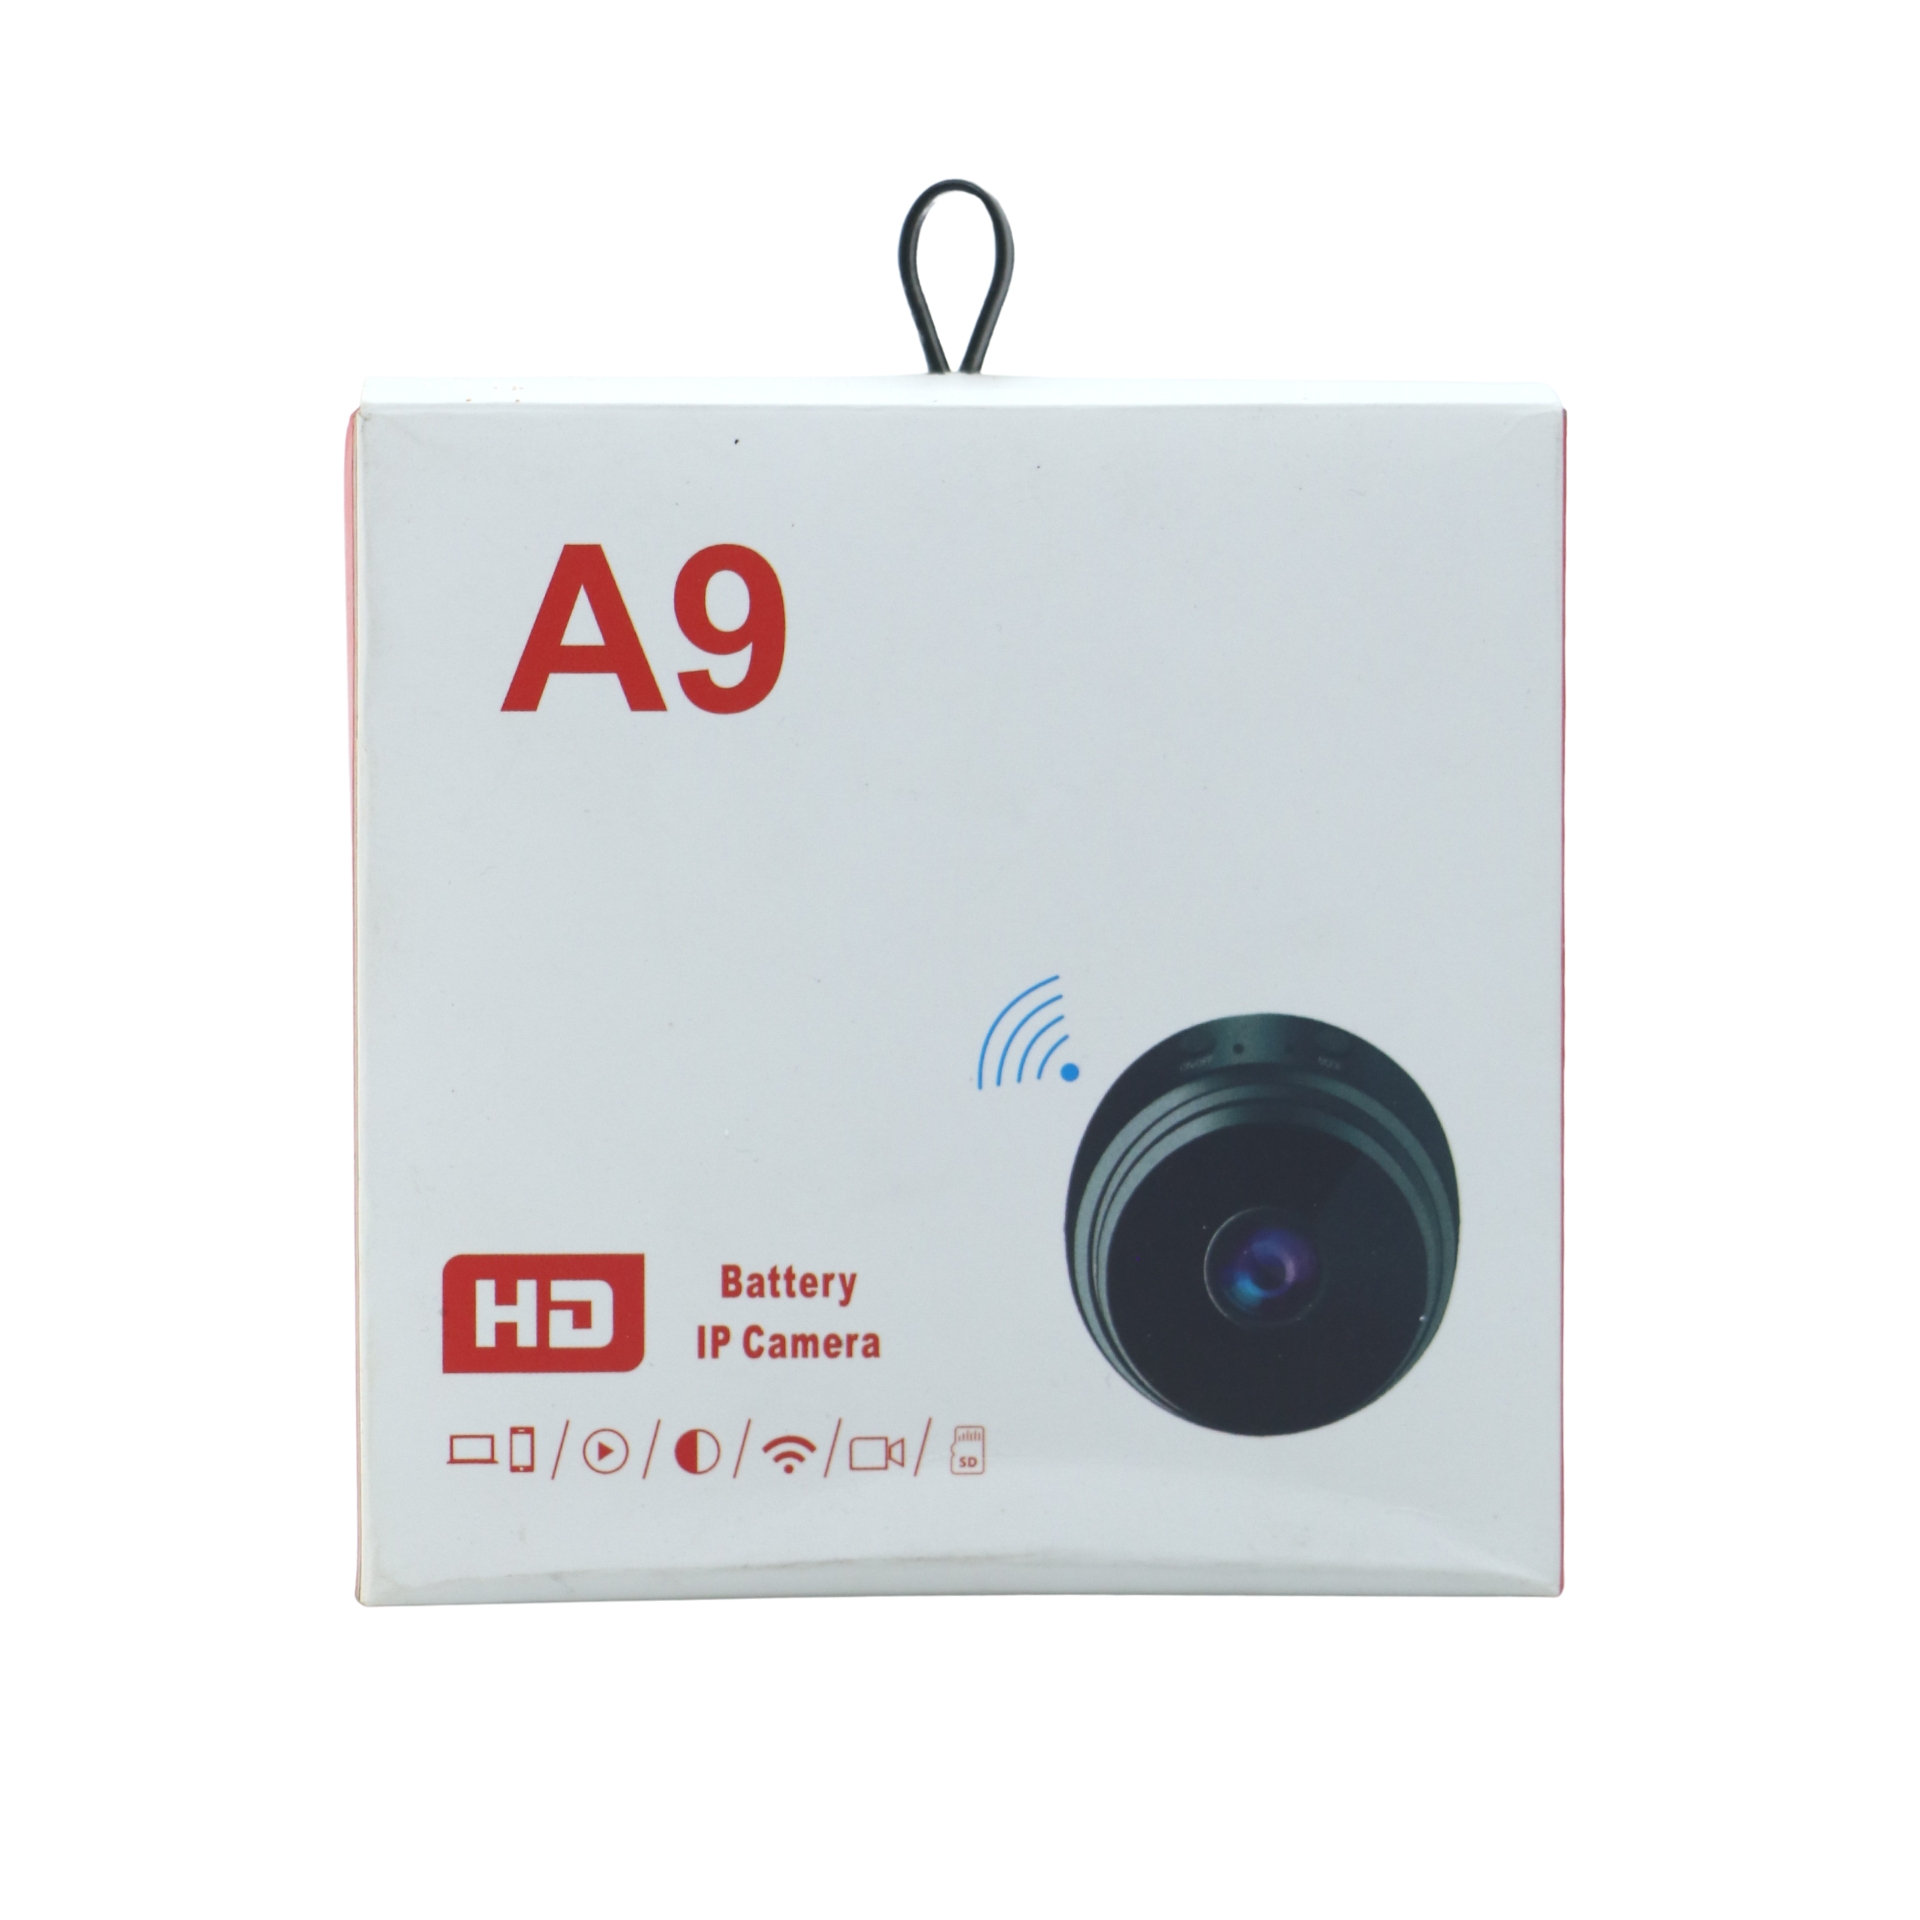 A9 IP Camera